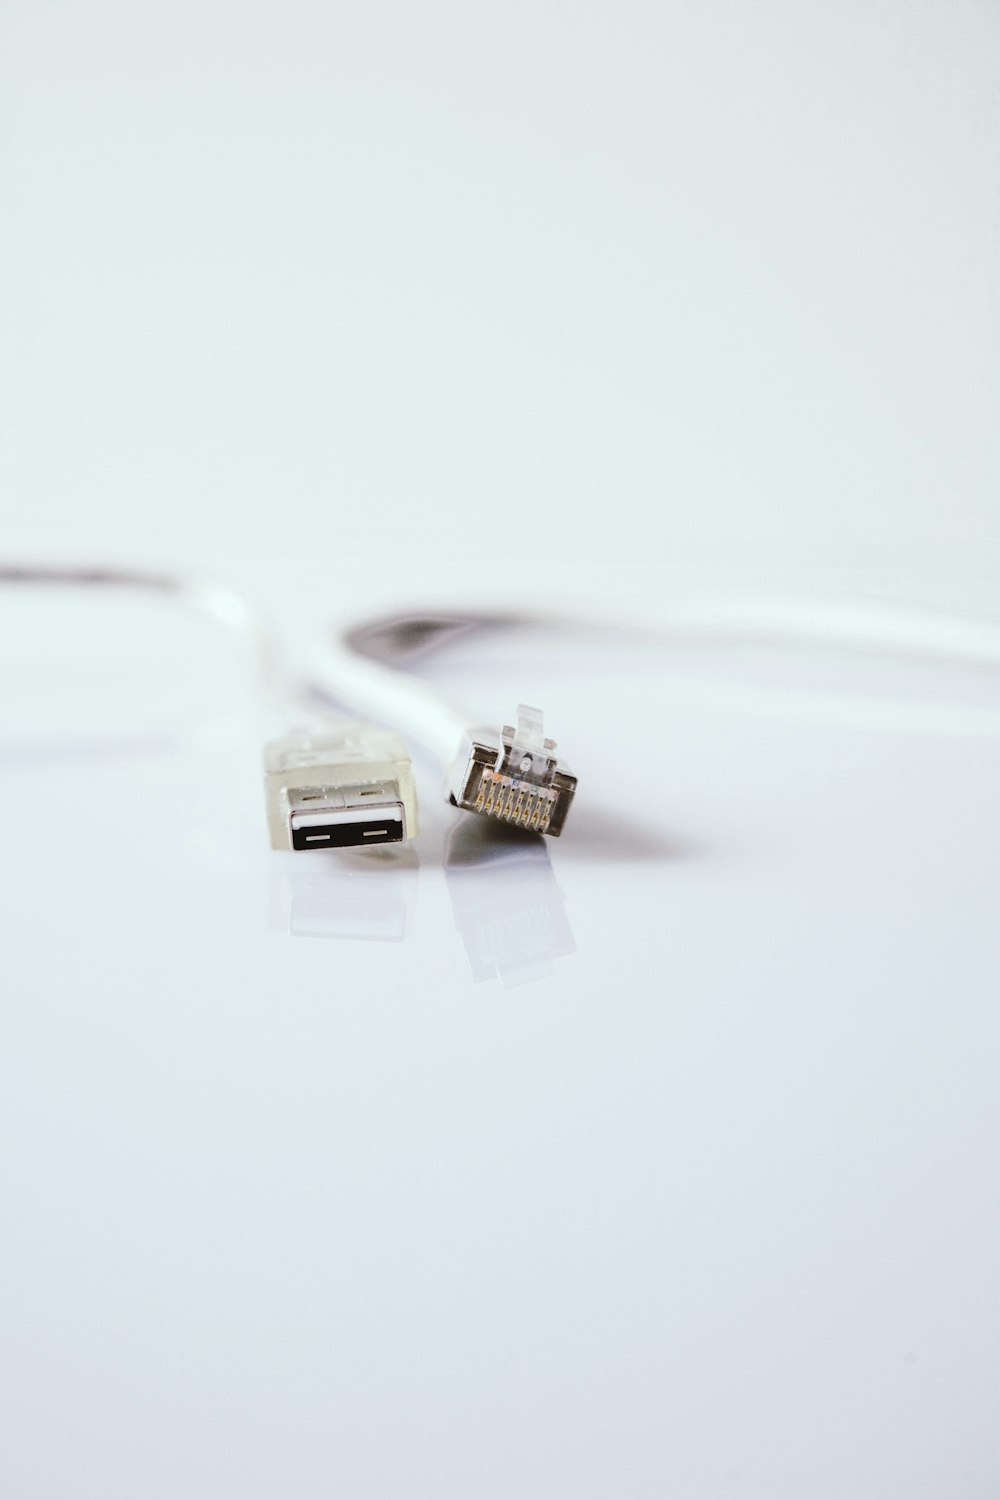 Câble USB blanc sur surface blanche